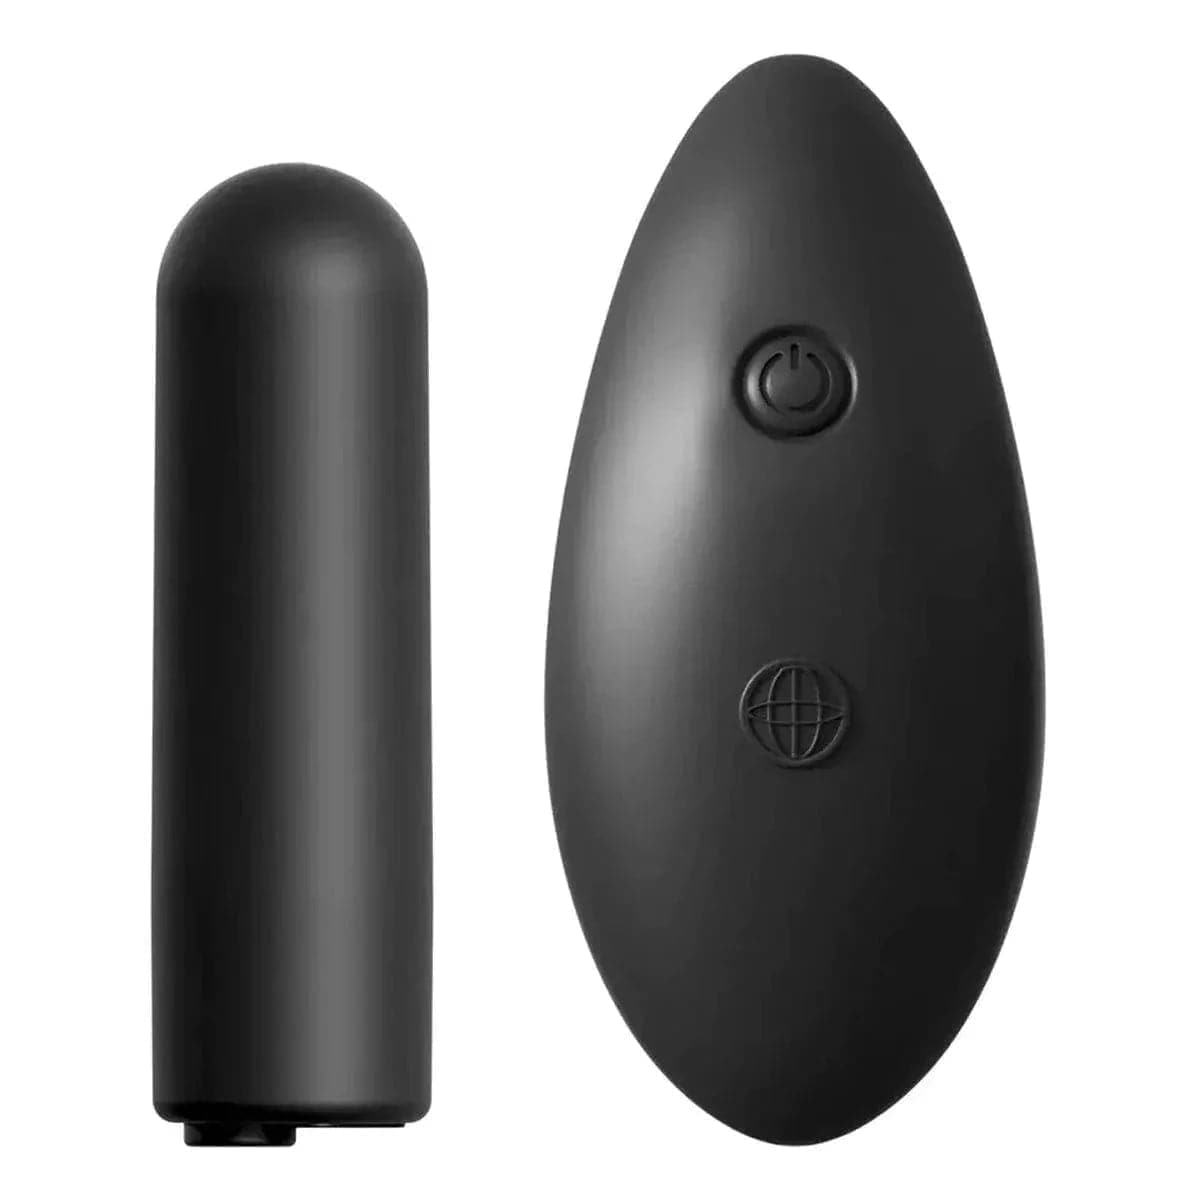 Cueca Vibratória Date Night USB Wireless - 10 Modos de Vibração, Tamanho S ao XL  Pipedream   